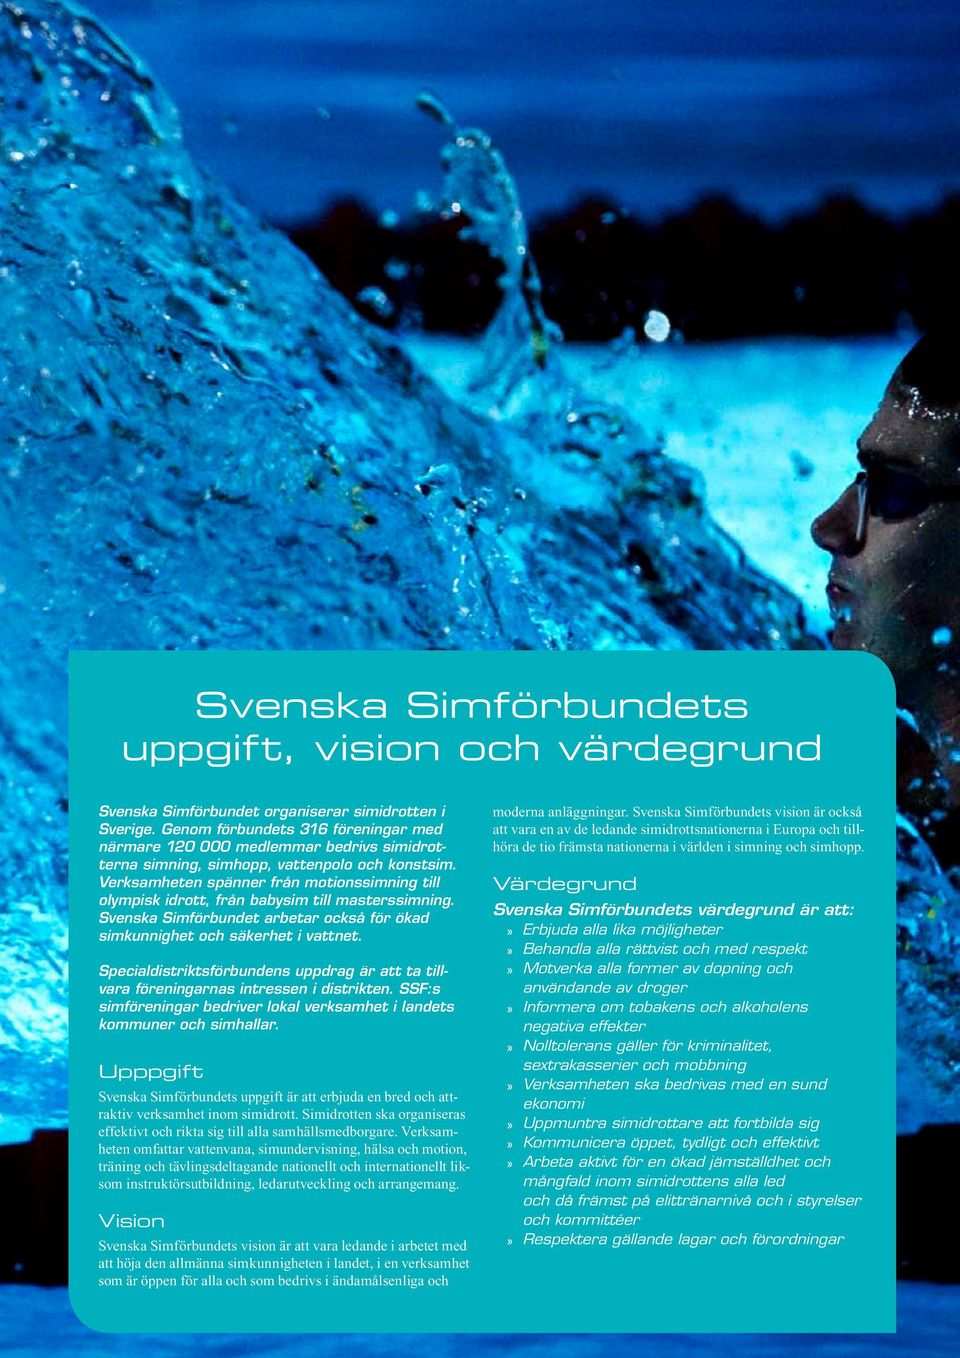 Verksamheten spänner från motionssimning till olympisk idrott, från babysim till masterssimning. Svenska Simförbundet arbetar också för ökad simkunnighet och säkerhet i vattnet.